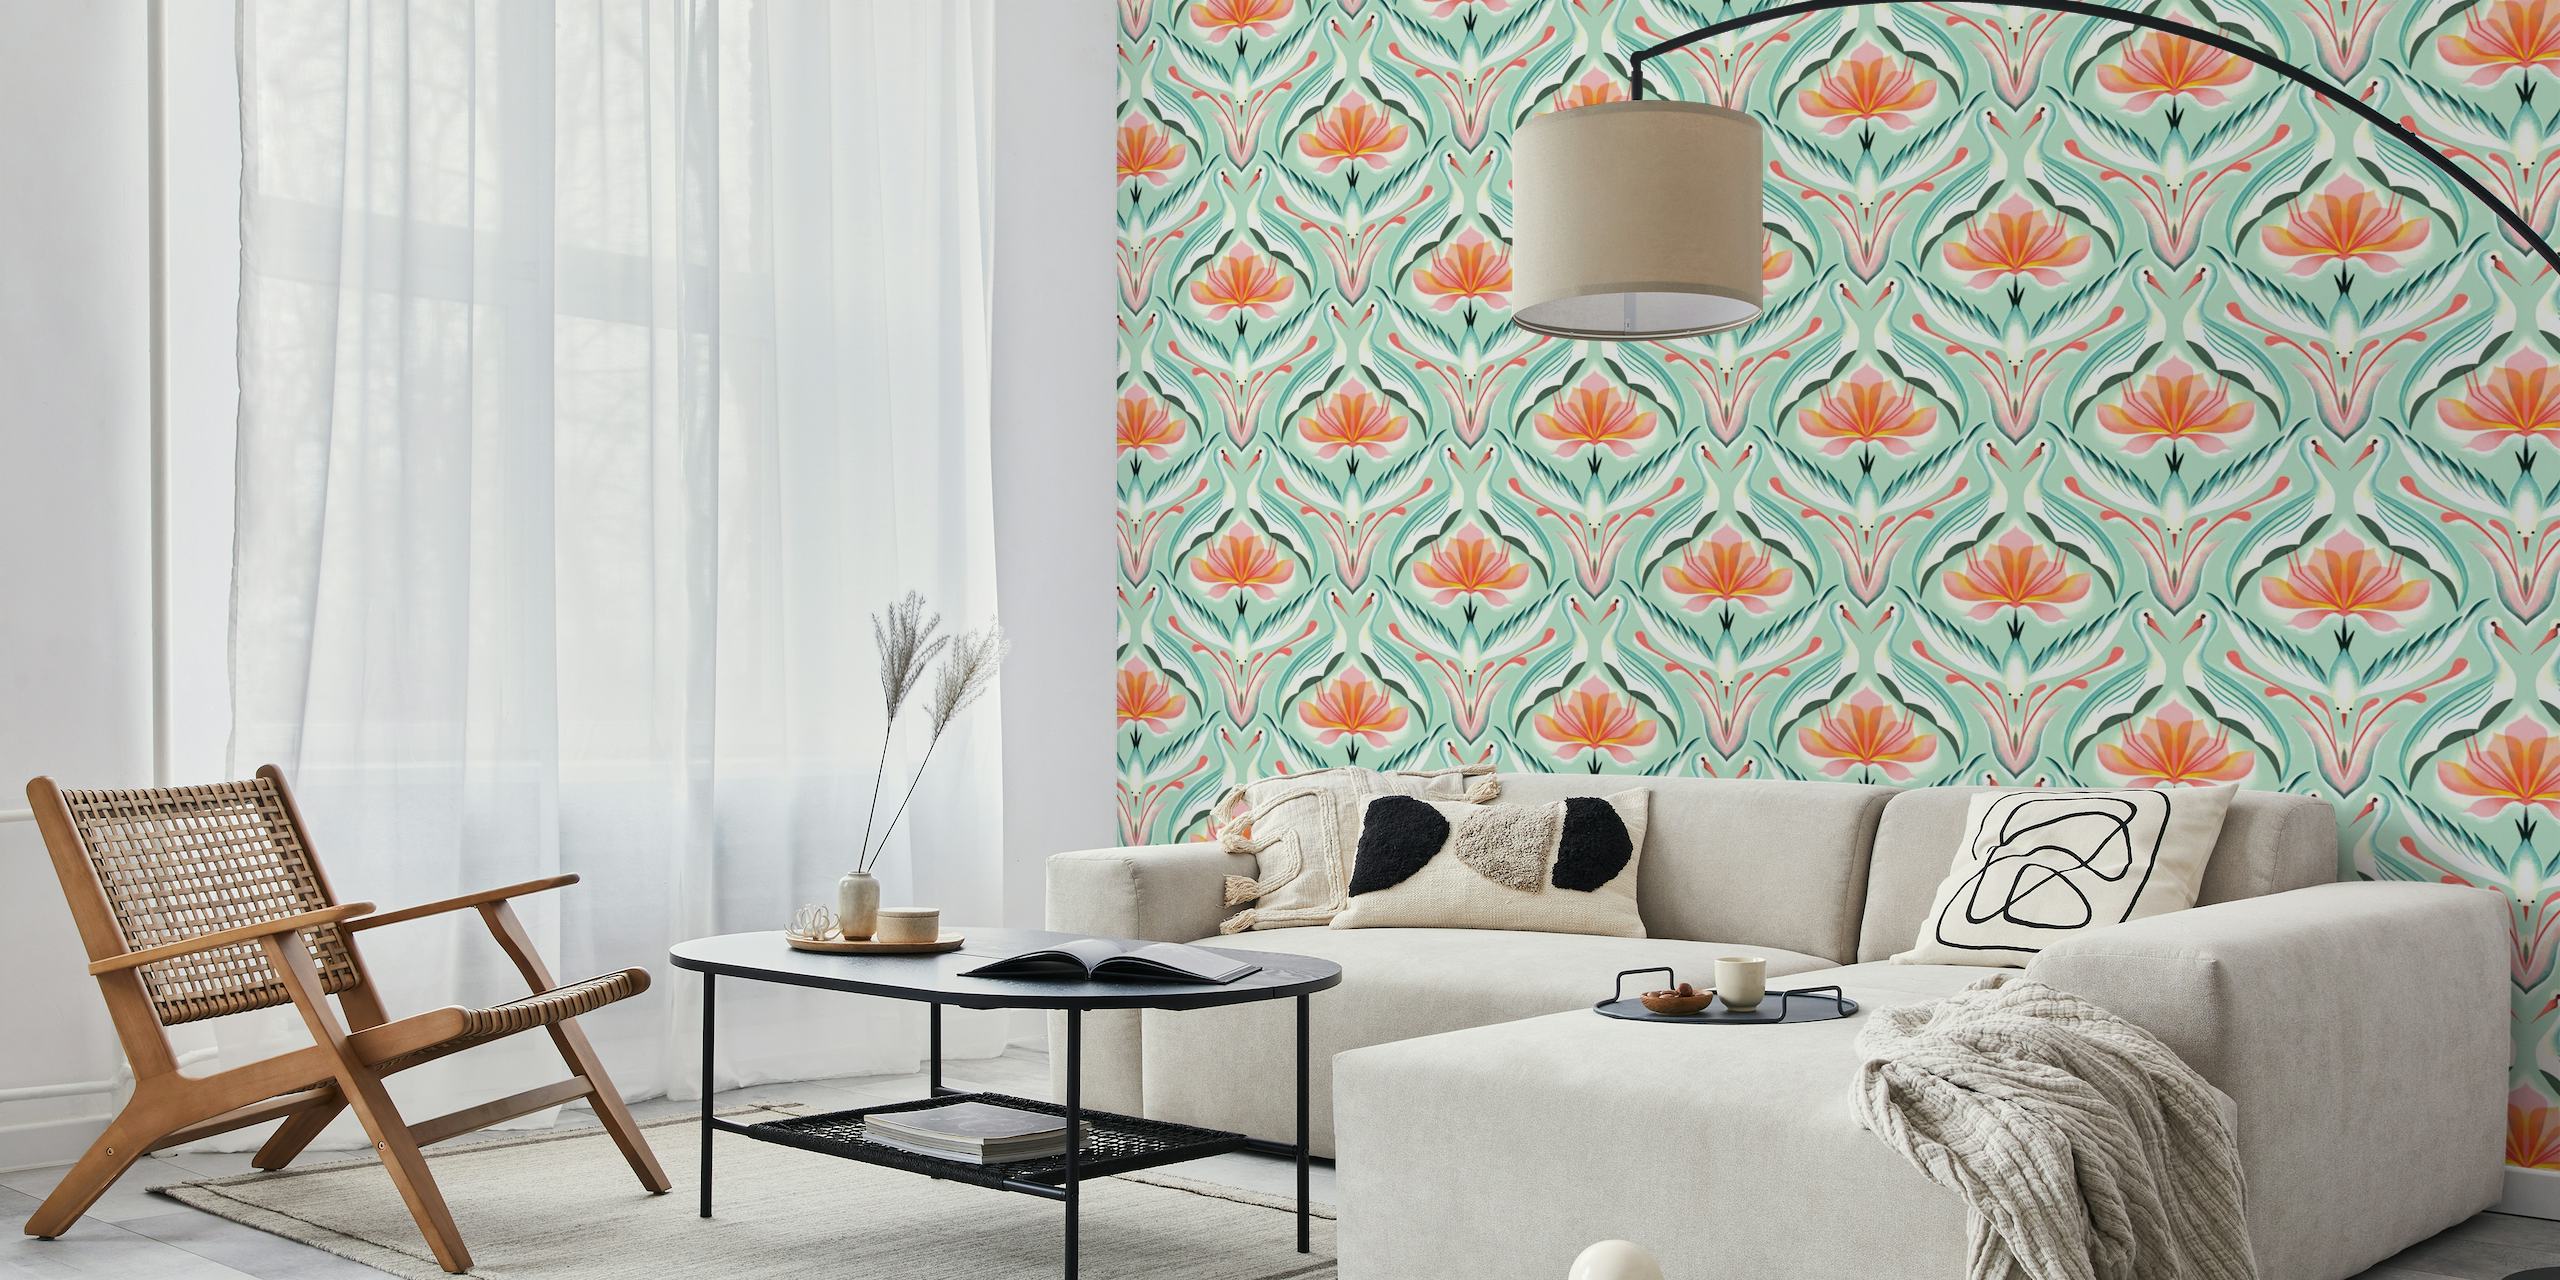 Papier peint mural représentant des fleurs de lotus et des grues élégantes dans un design symétrique avec une palette de couleurs douces